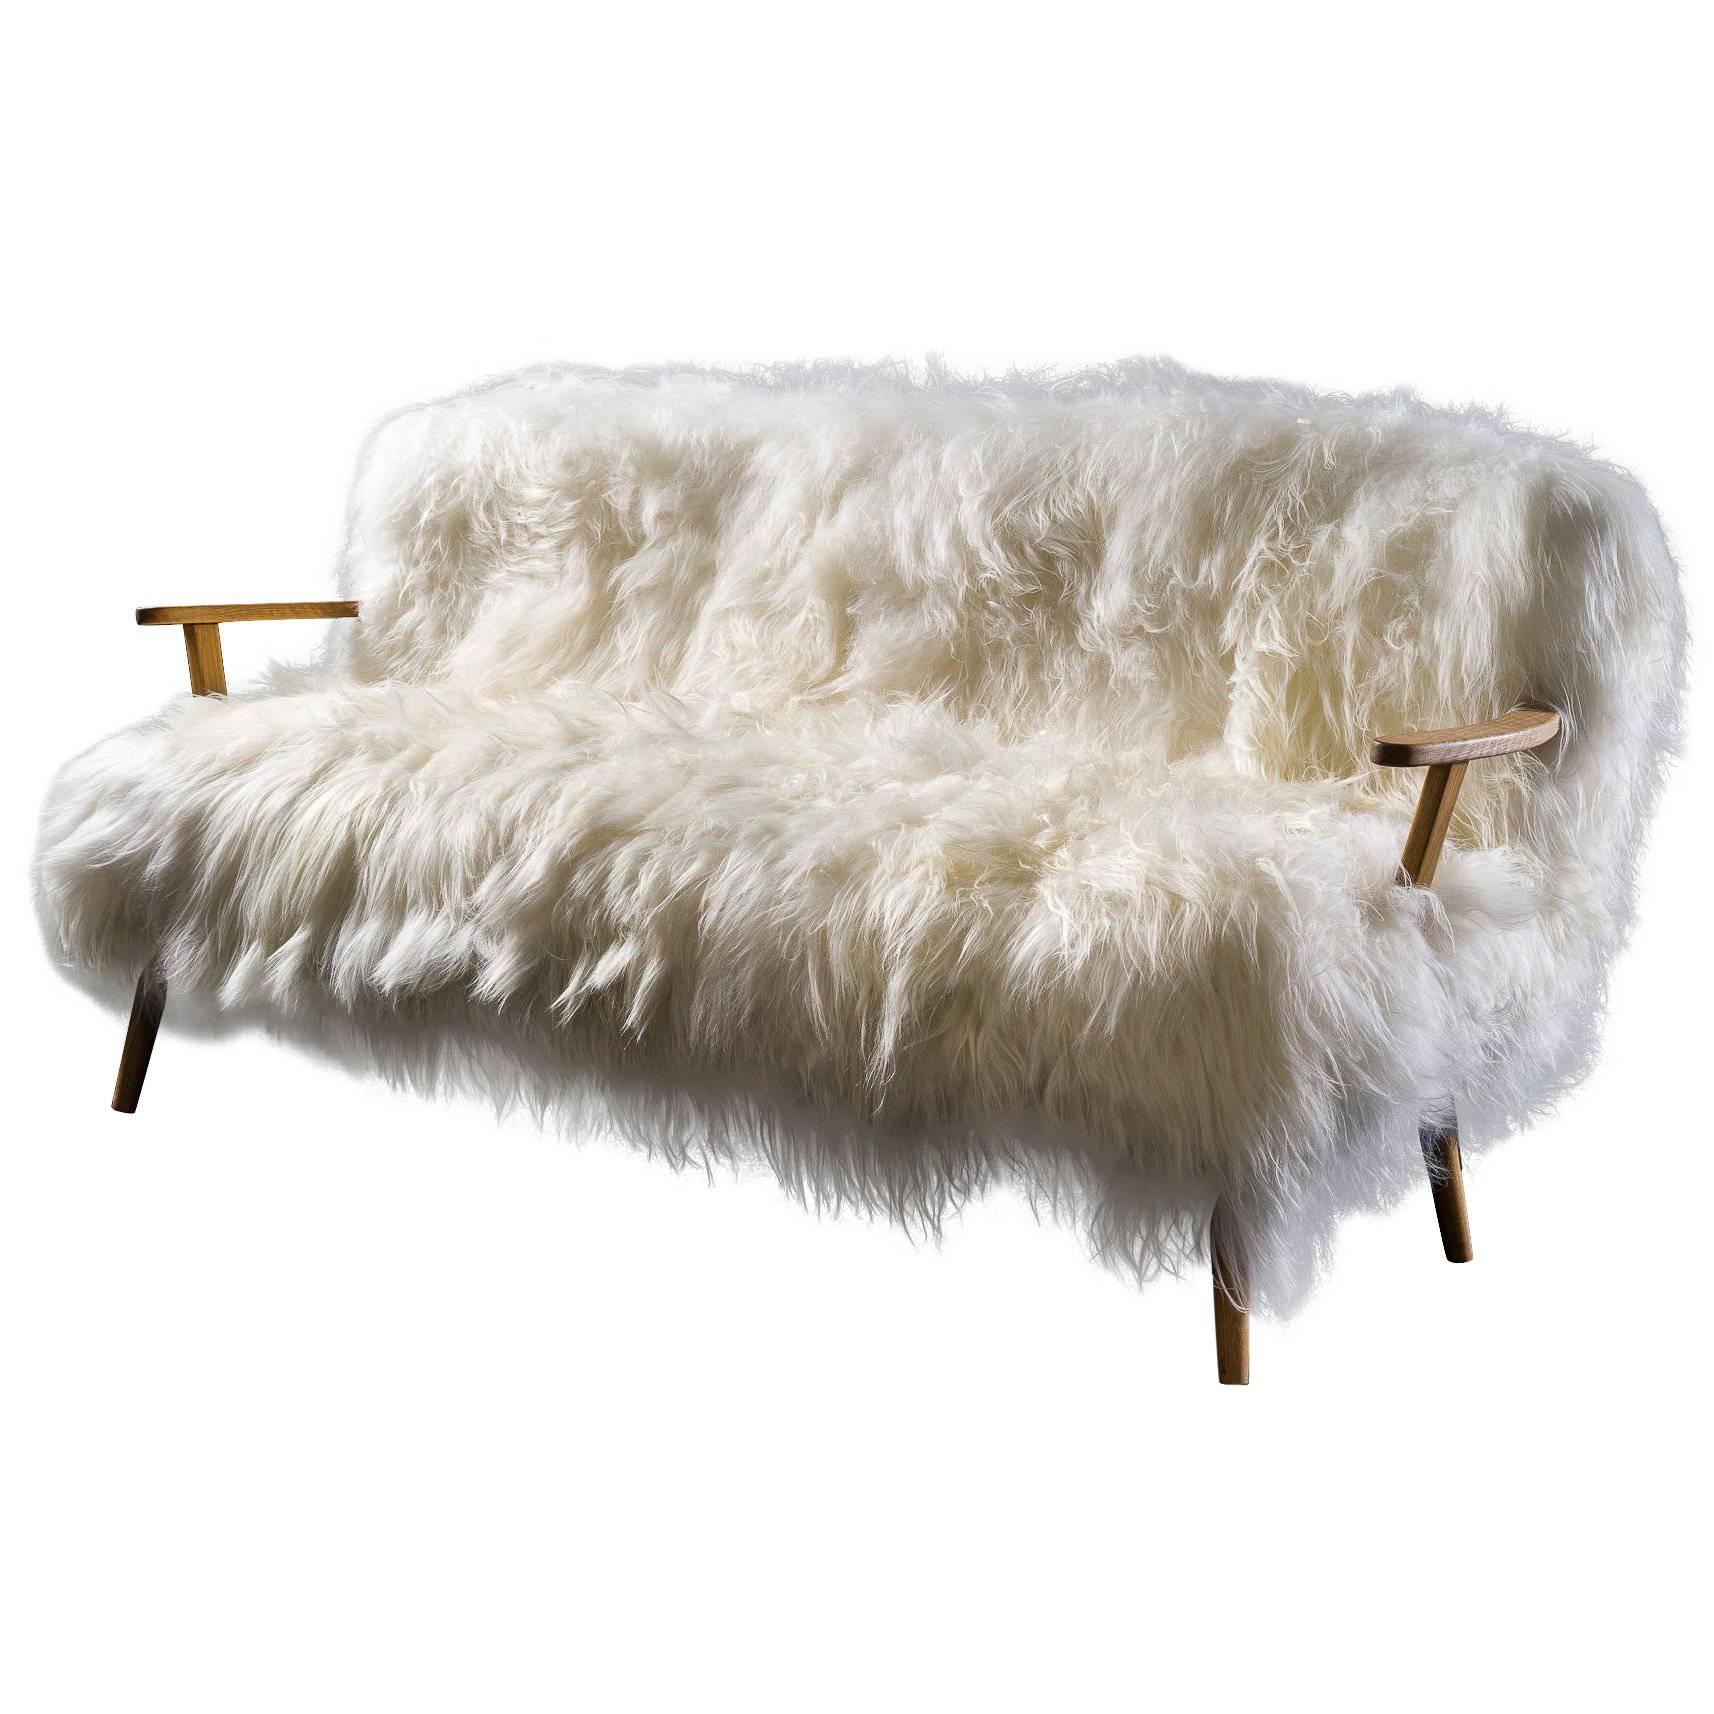 Stunning Sheepskin Sofa Collection "Alpina" For Sale